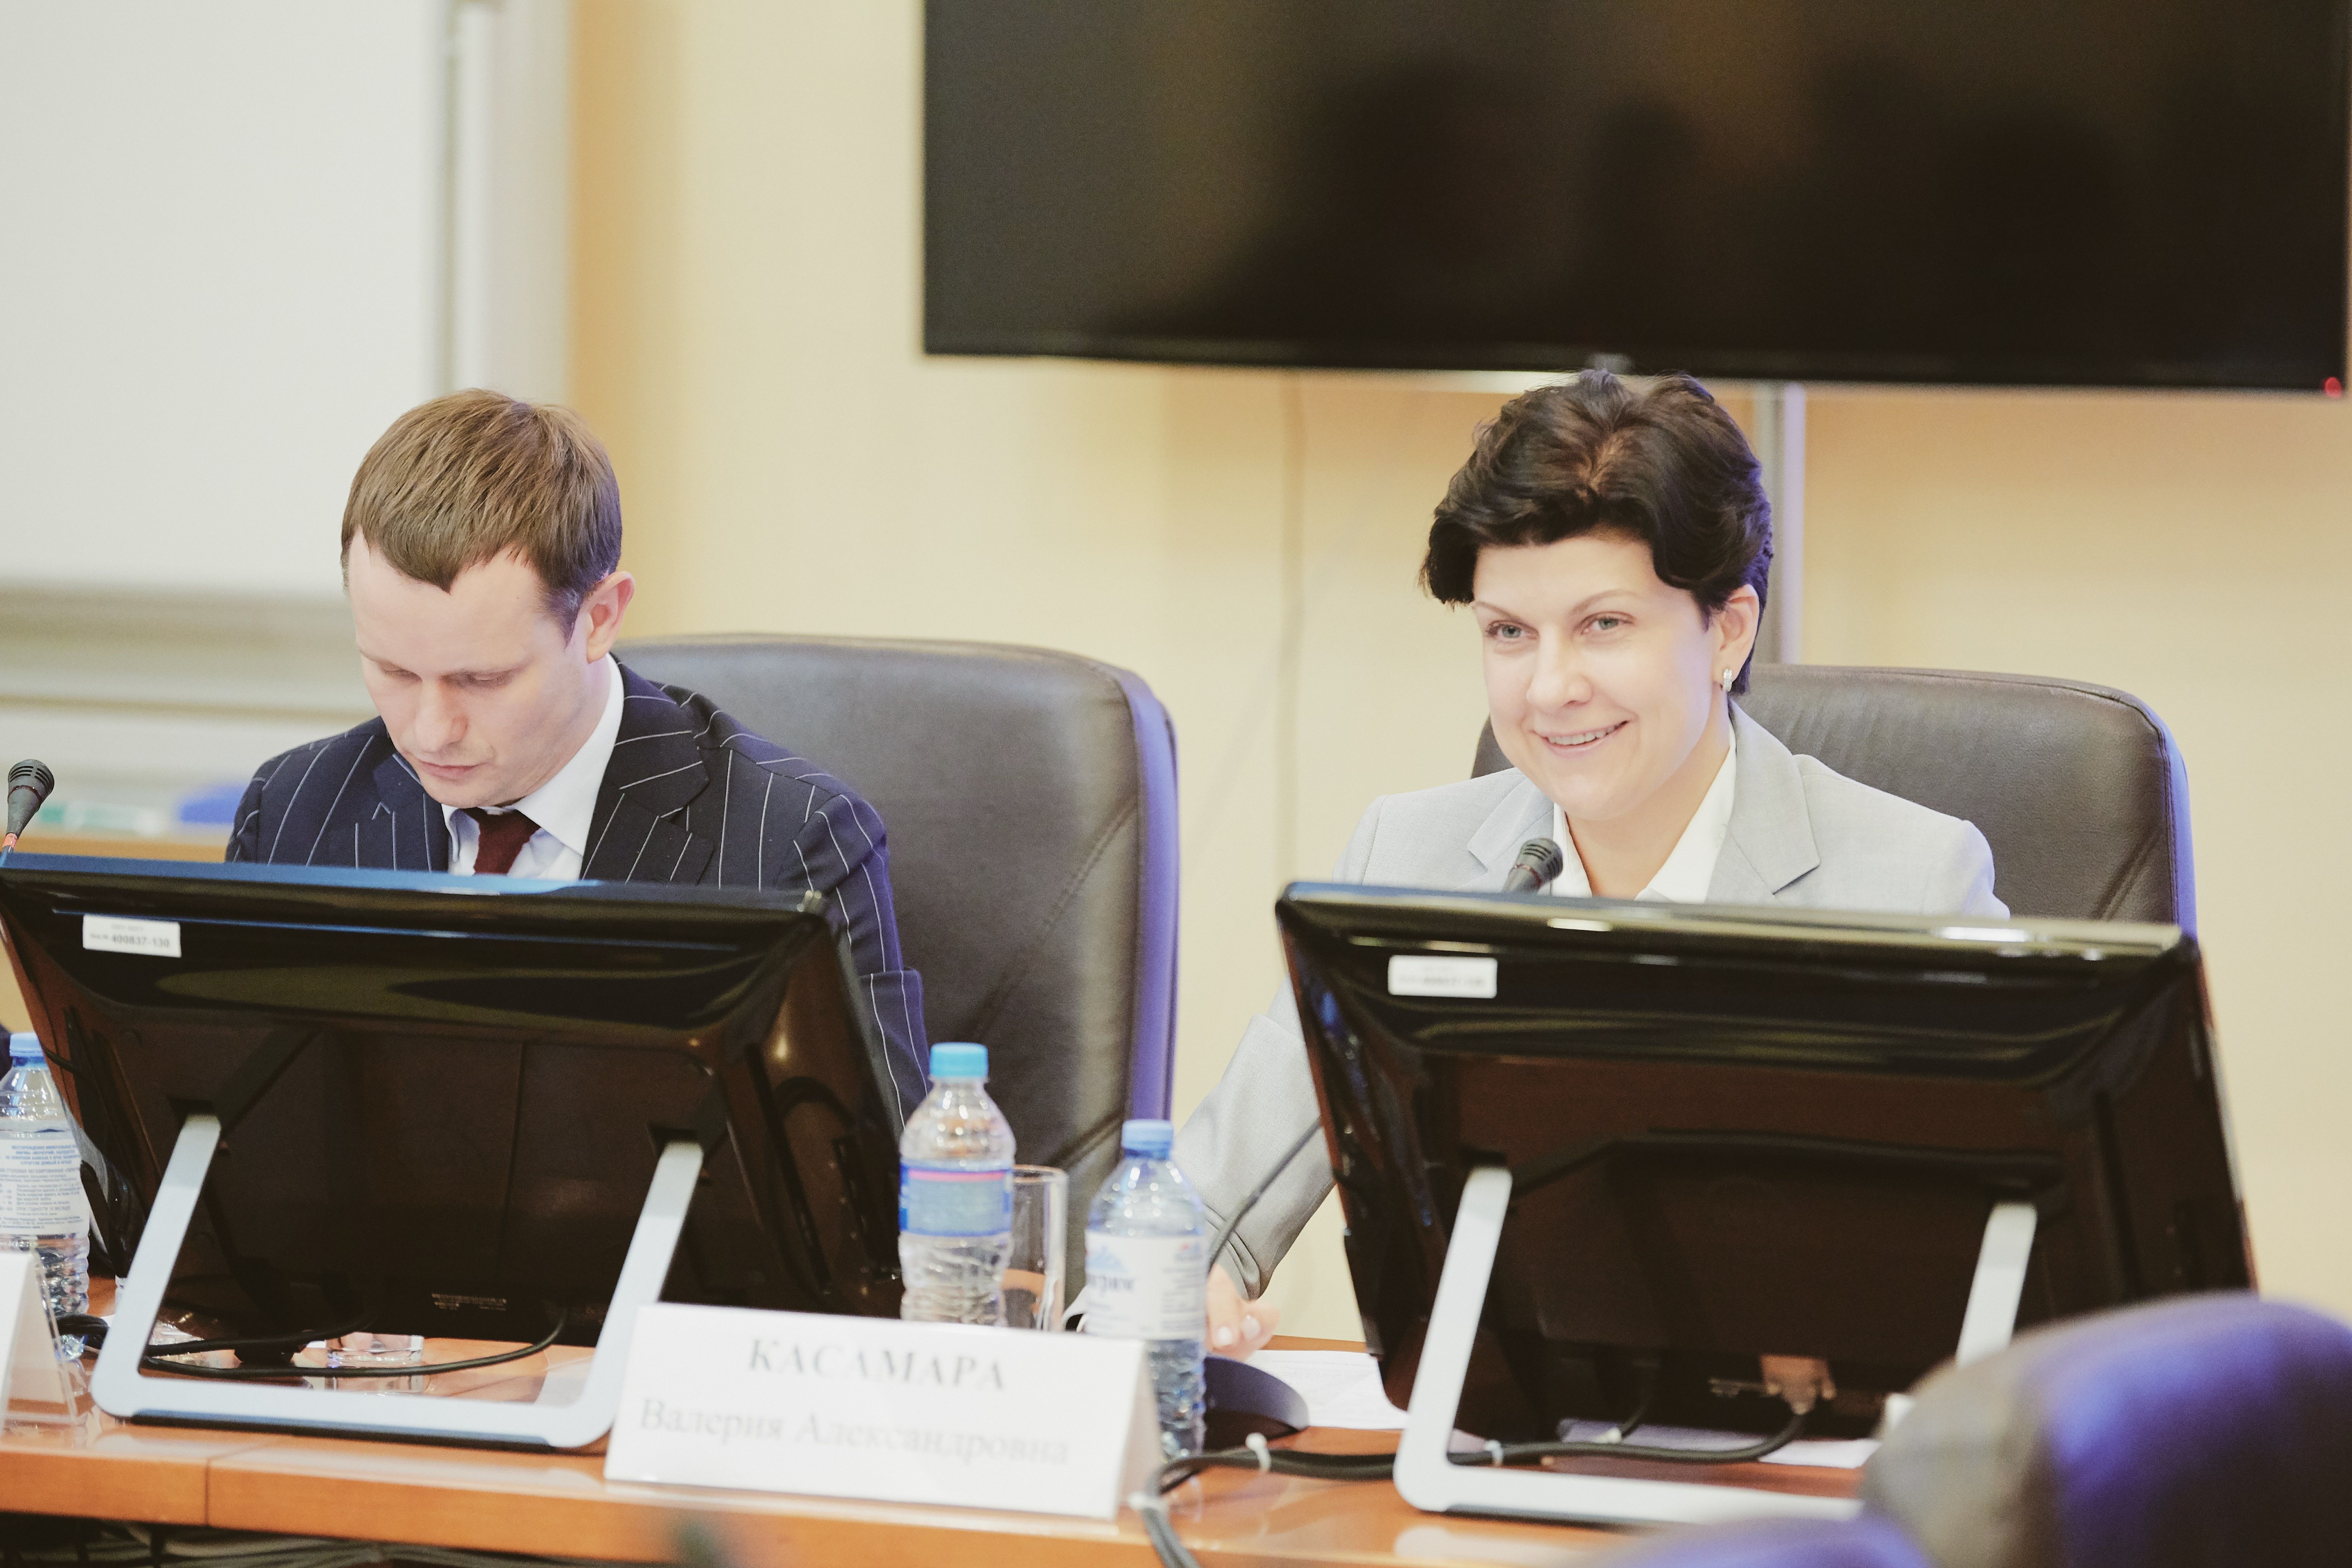 Ноябрь 2019 года. Александр Адайкин и Валерия Касамара на дискуссионной площадке. Фото: пресс-служба ВШЭ